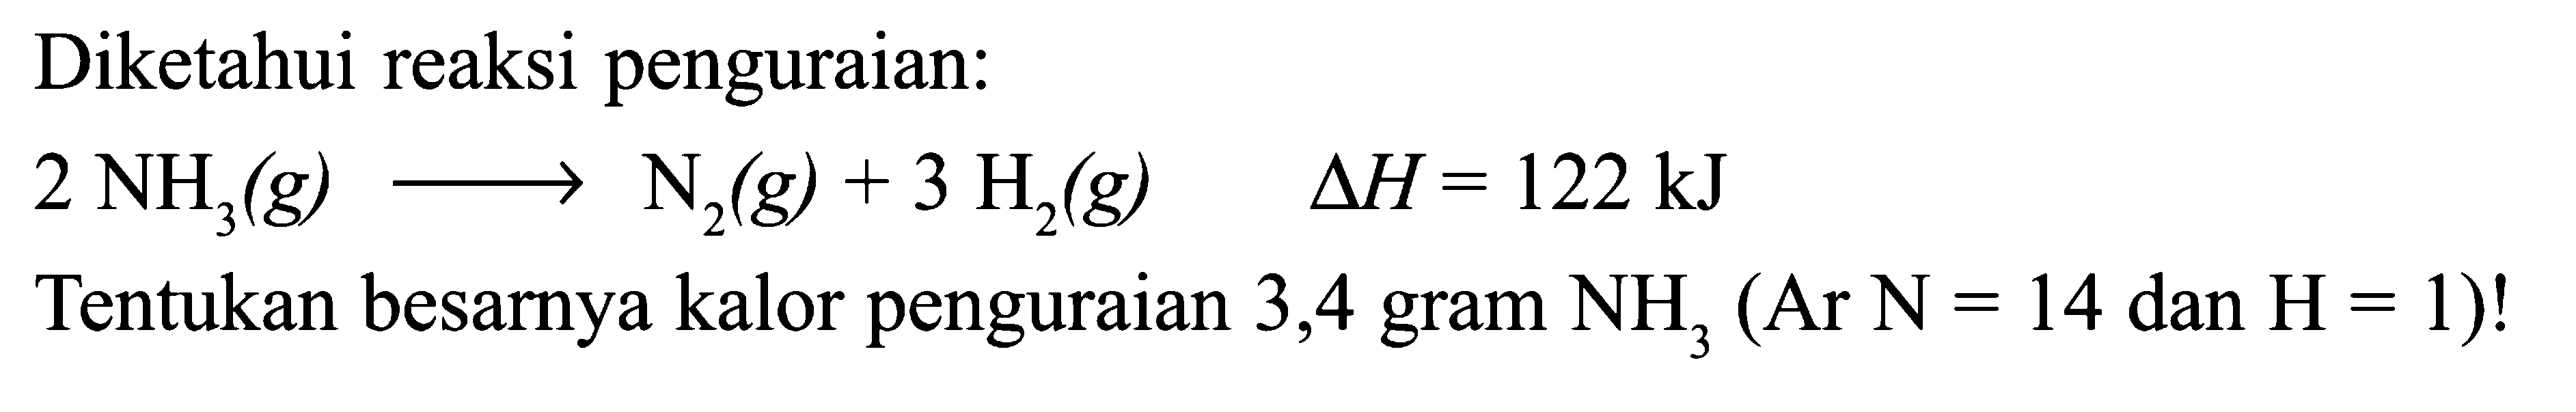 Diketahui reaksi penguraian: 2 NH3 (g) -> N2 (g) + 3 H2 (g) delta H = 122 kJ Tentukan besarnya kalor penguraian 3,4 gram NH3 (Ar N = 14 dan H = 1)!